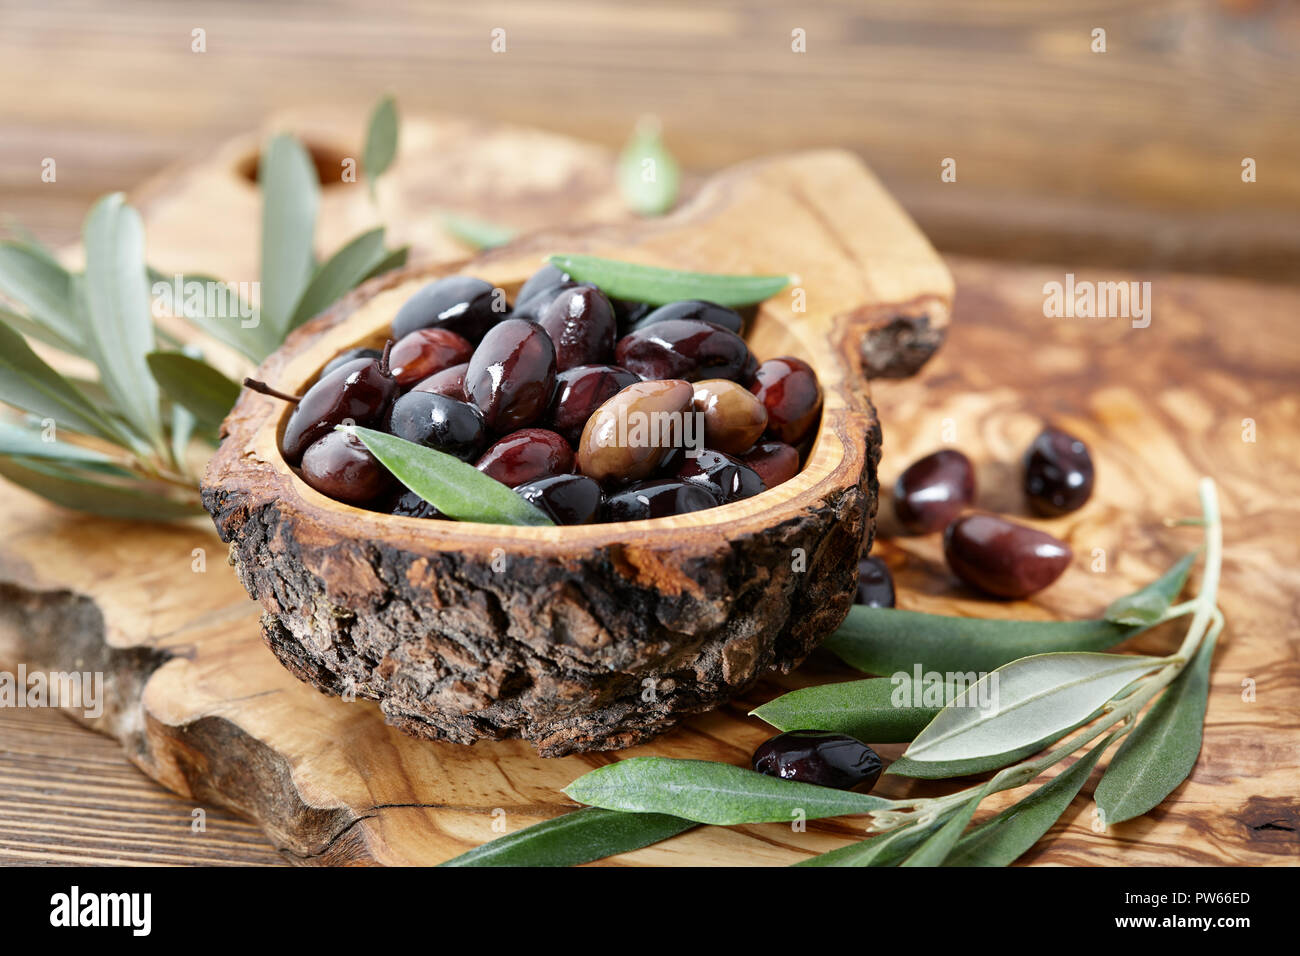 Brown Frais d'olives kalamata et de feuilles dans un bol en bois d'olivier Banque D'Images